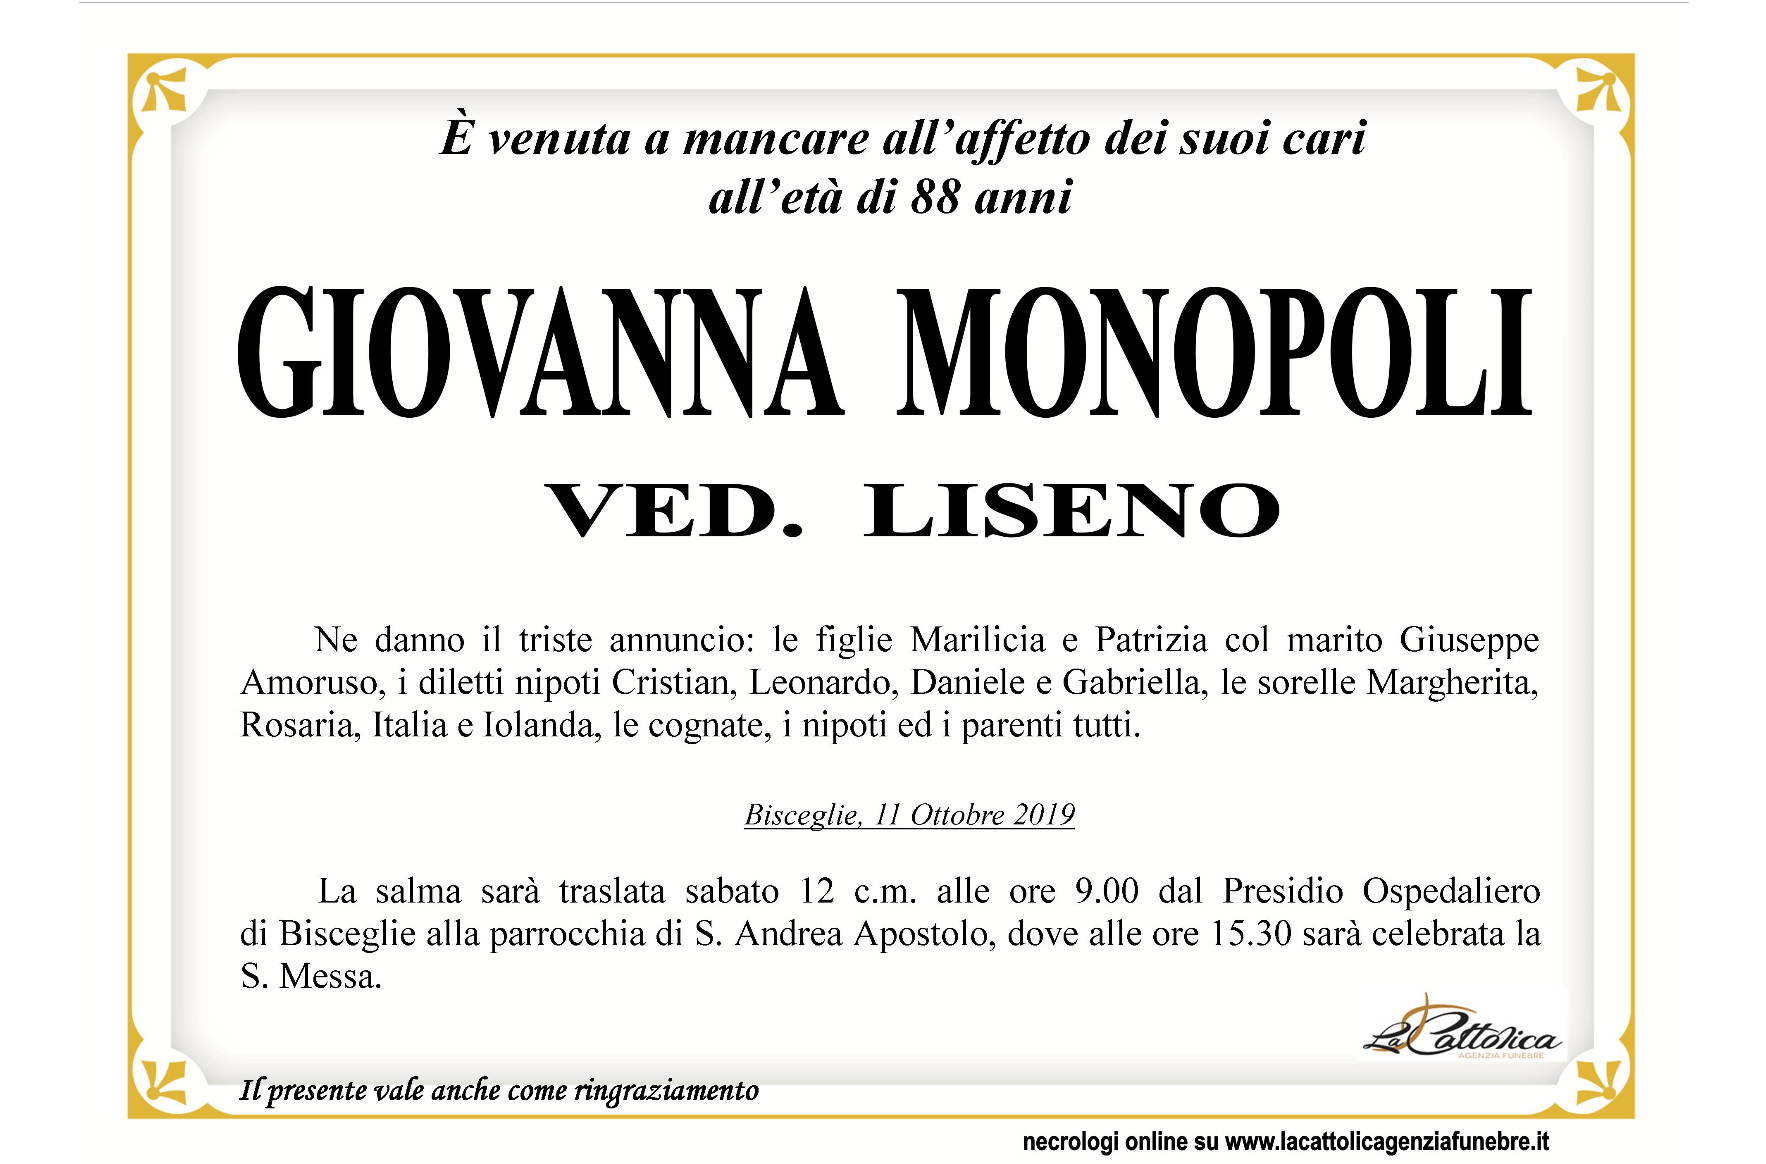 Giovanna Monopoli